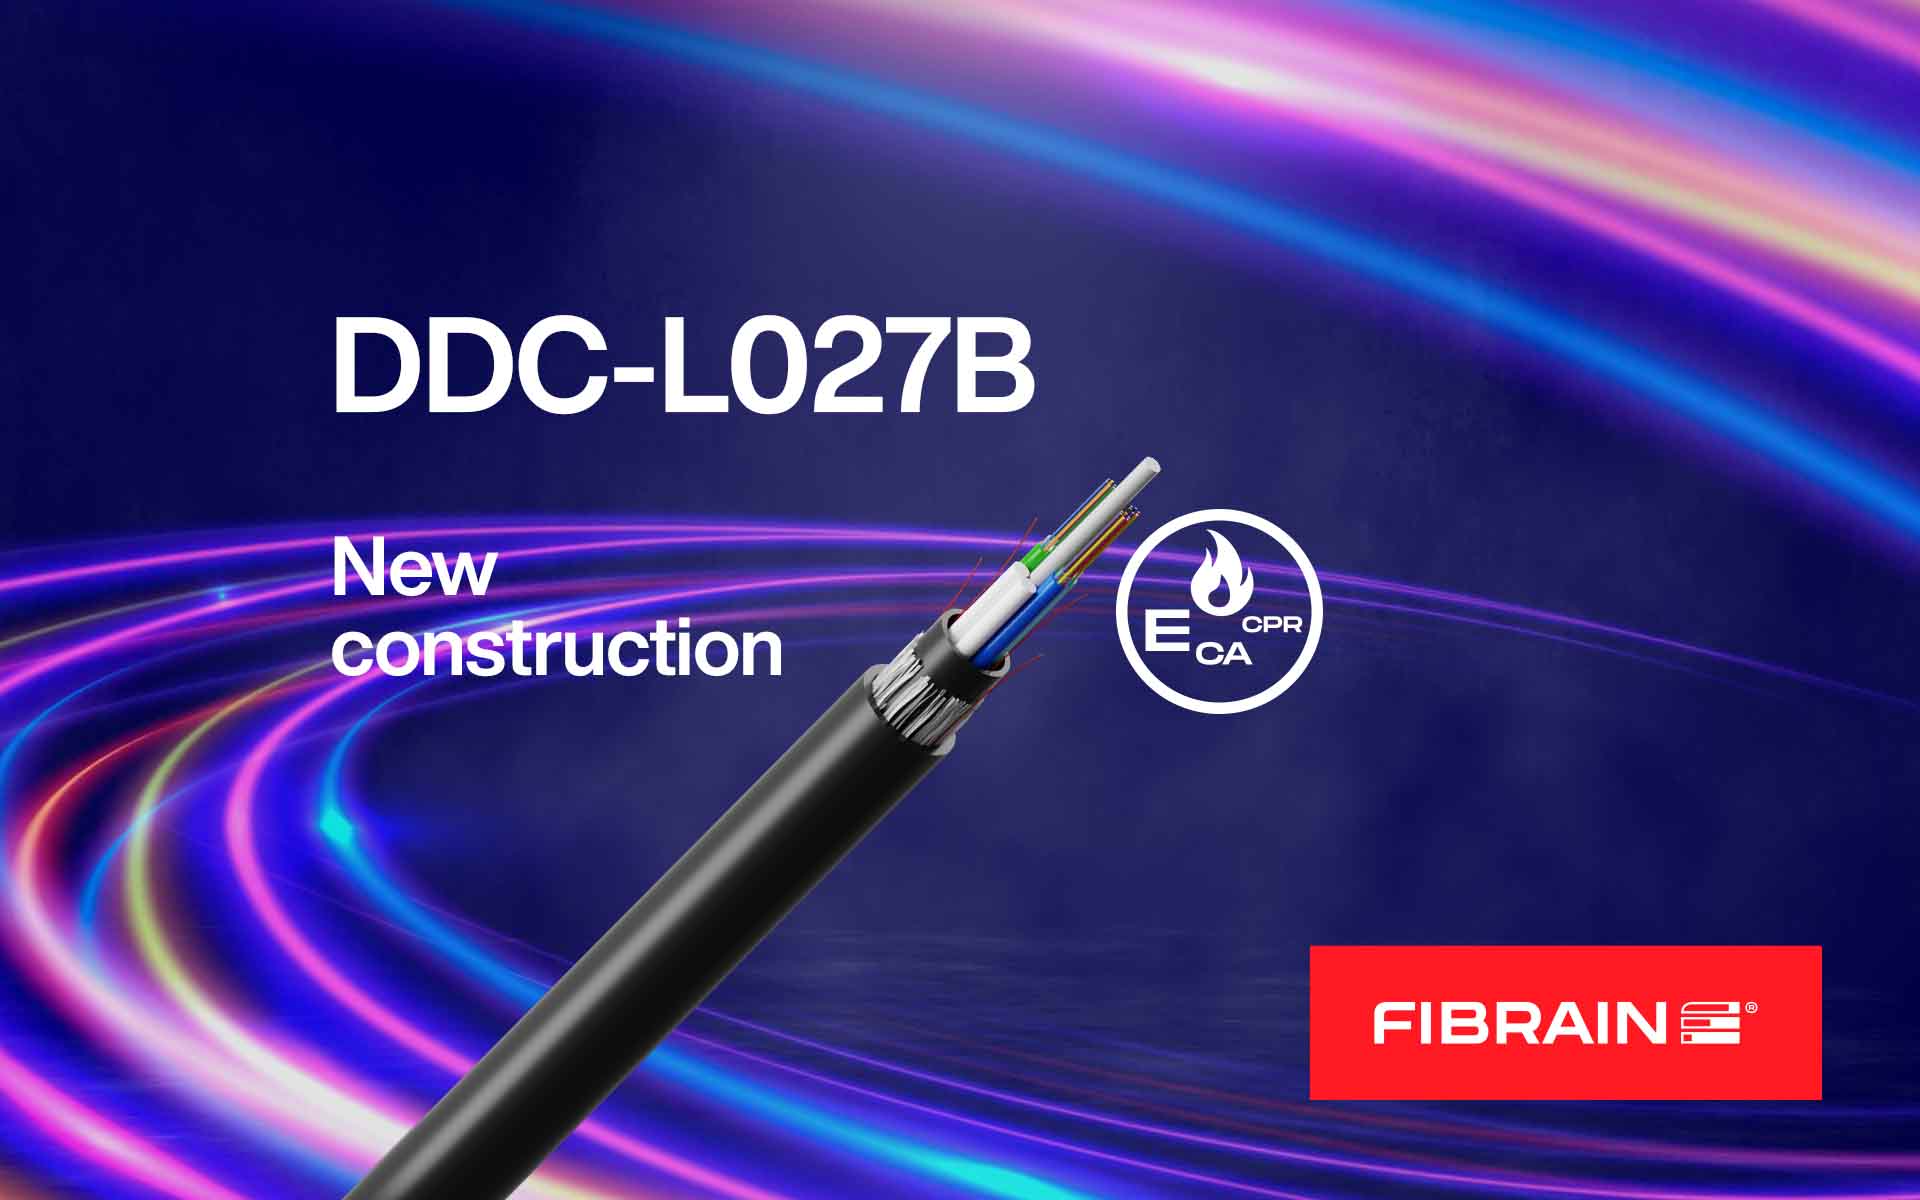 New fiber optic cable design DD-L027B!